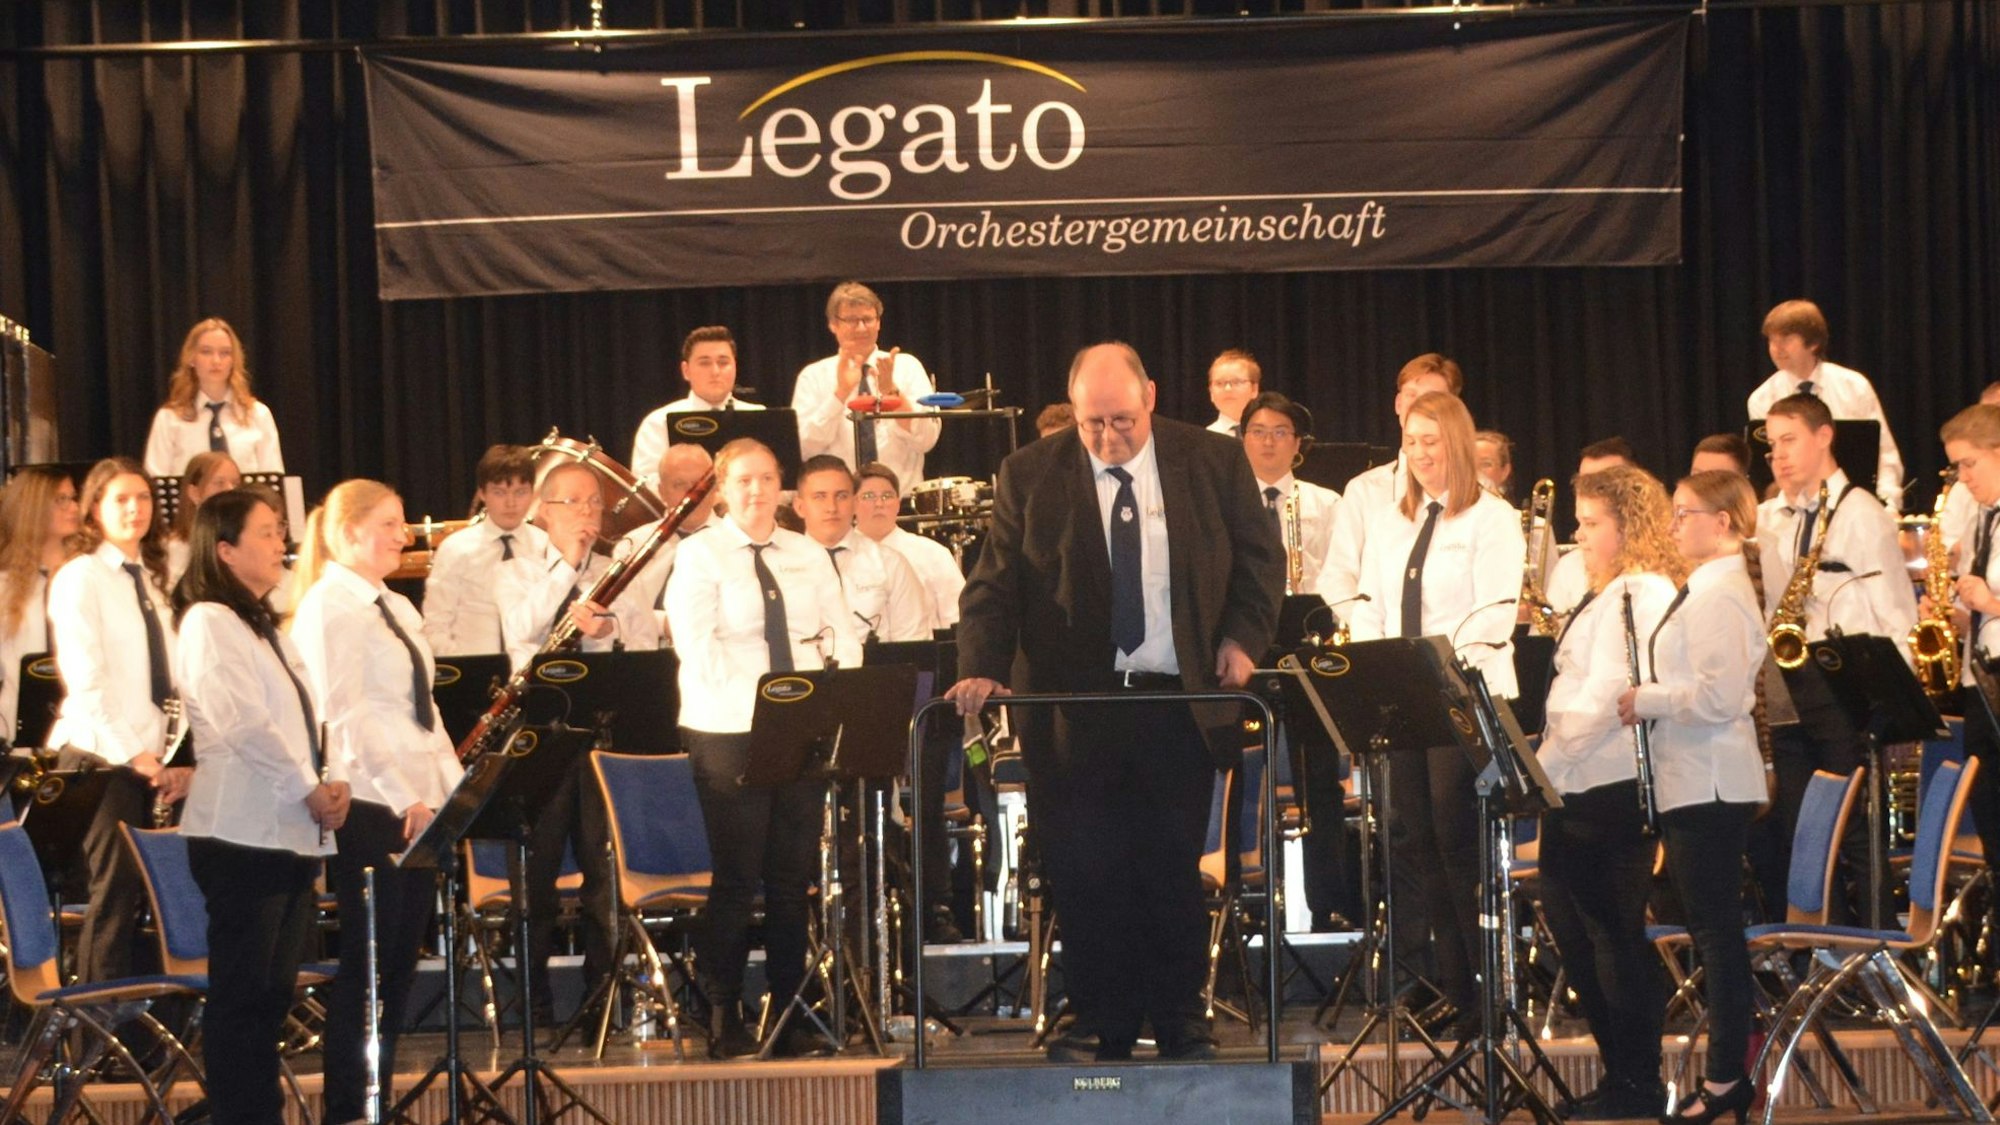 Gruppenbild der Legato-Orchestergemeinschaft mit ihrem Dirigenten